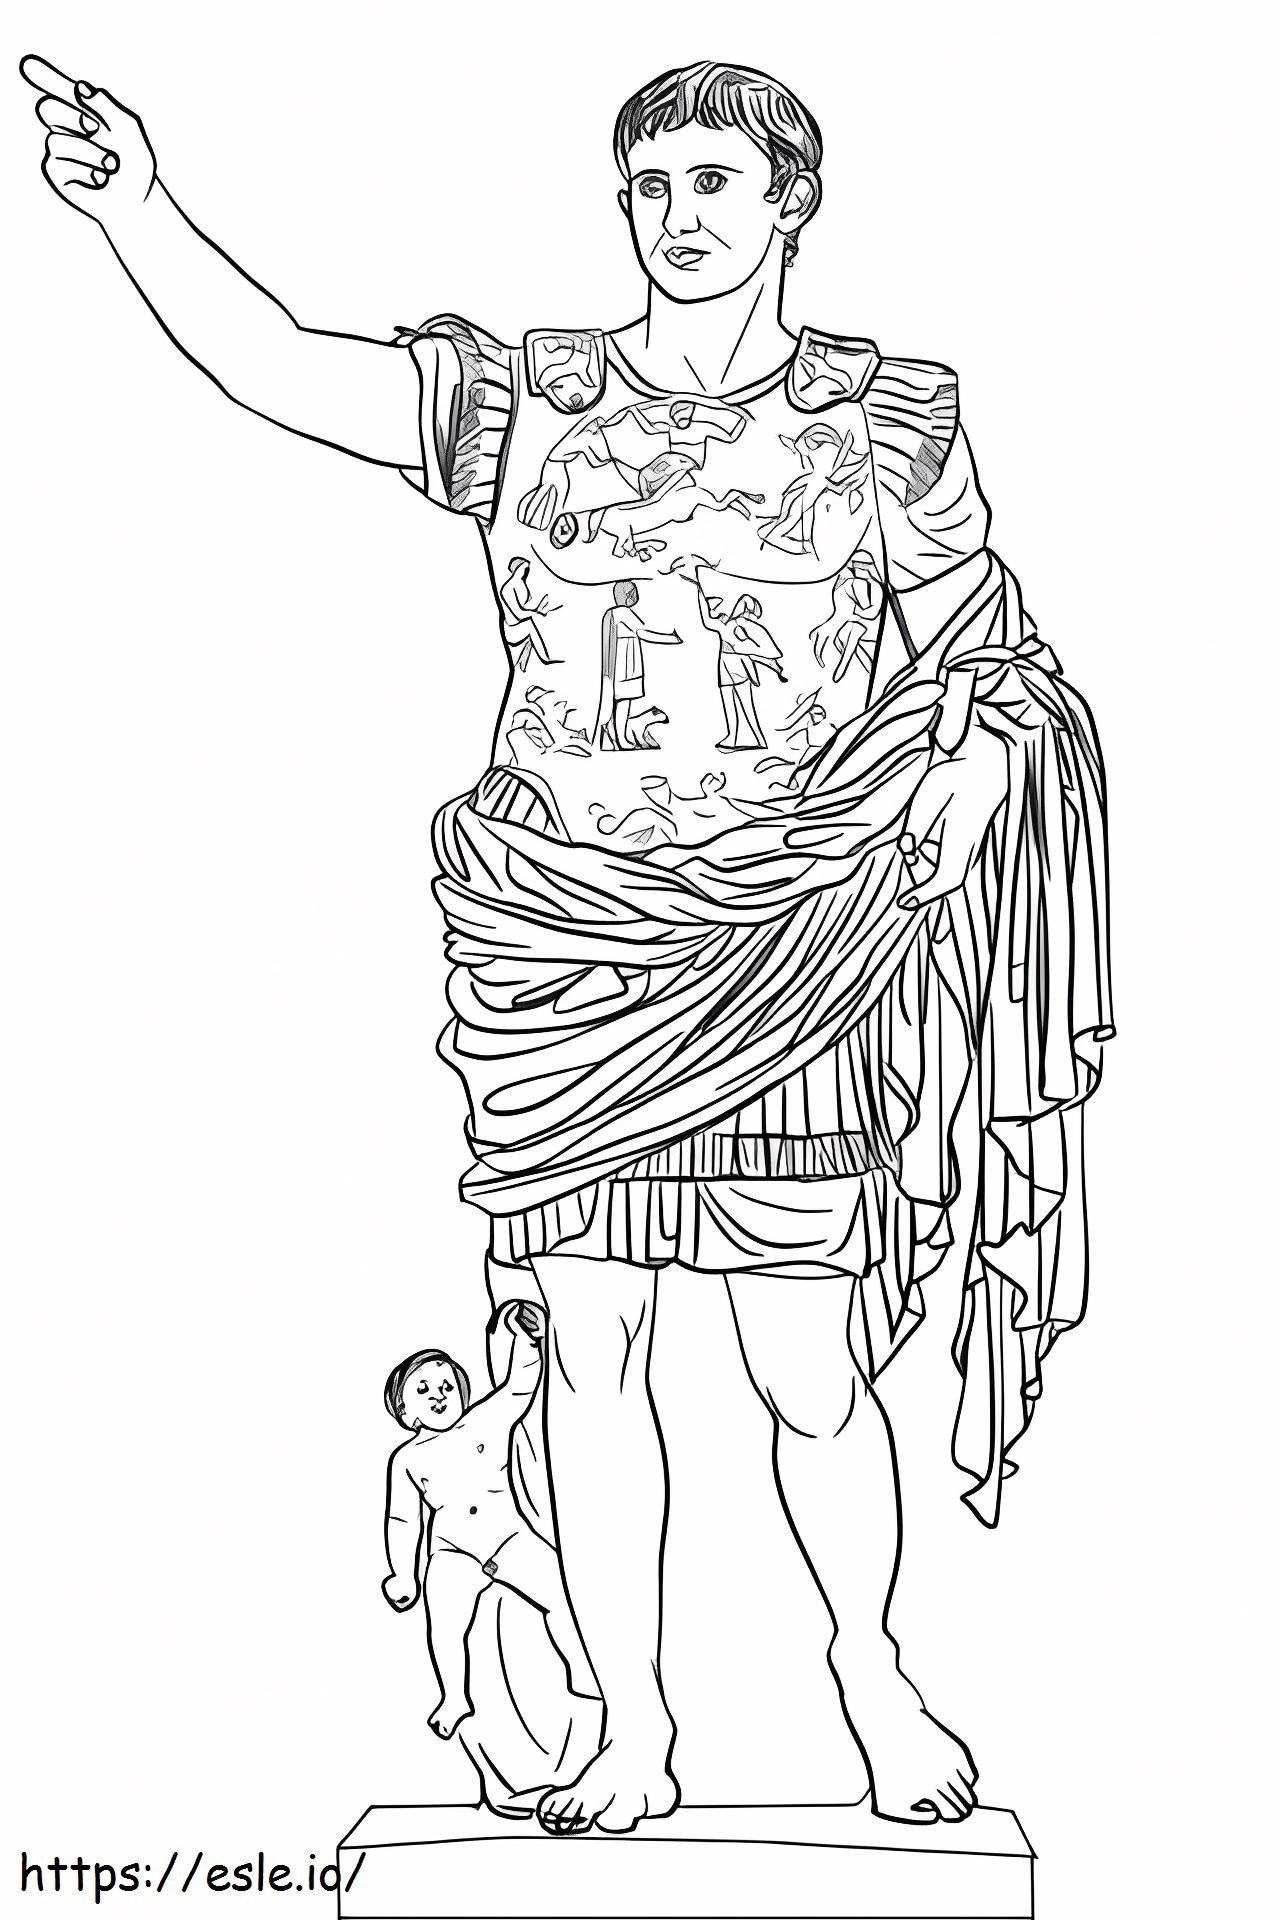 Coloriage Statue de César Auguste à imprimer dessin